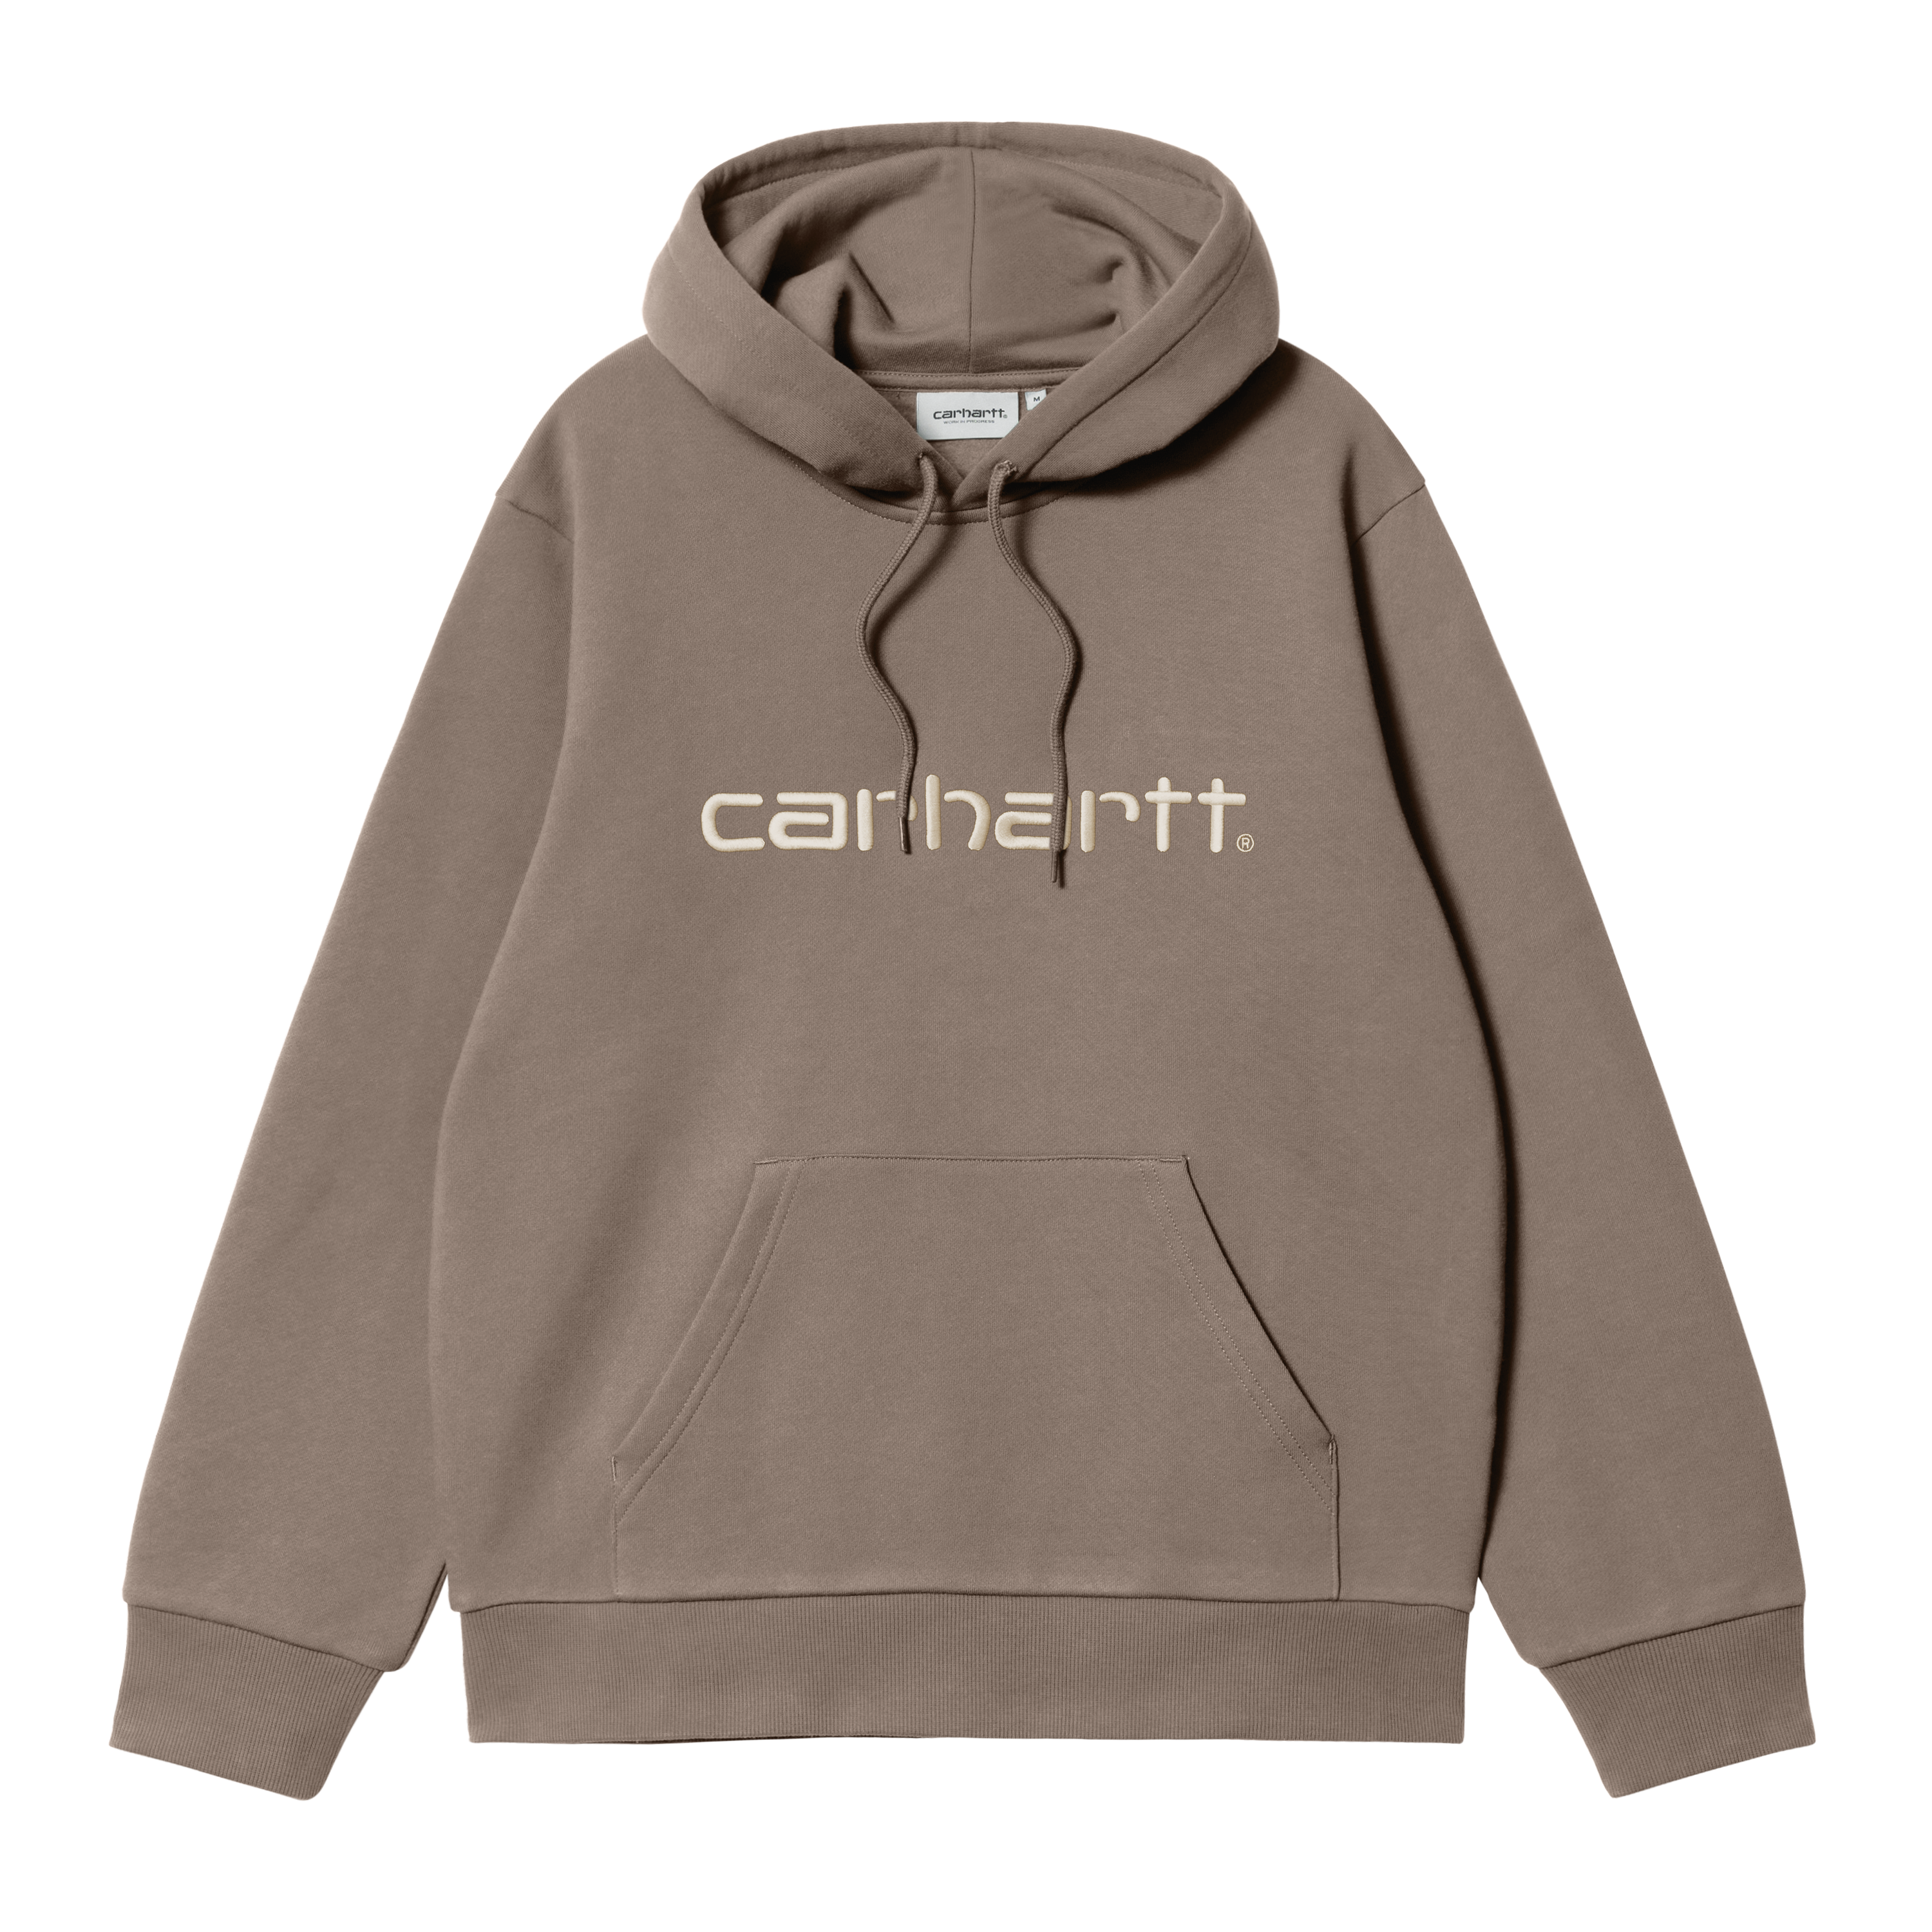 Carhartt WIP Hooded Carhartt Sweatshirt in Marrone